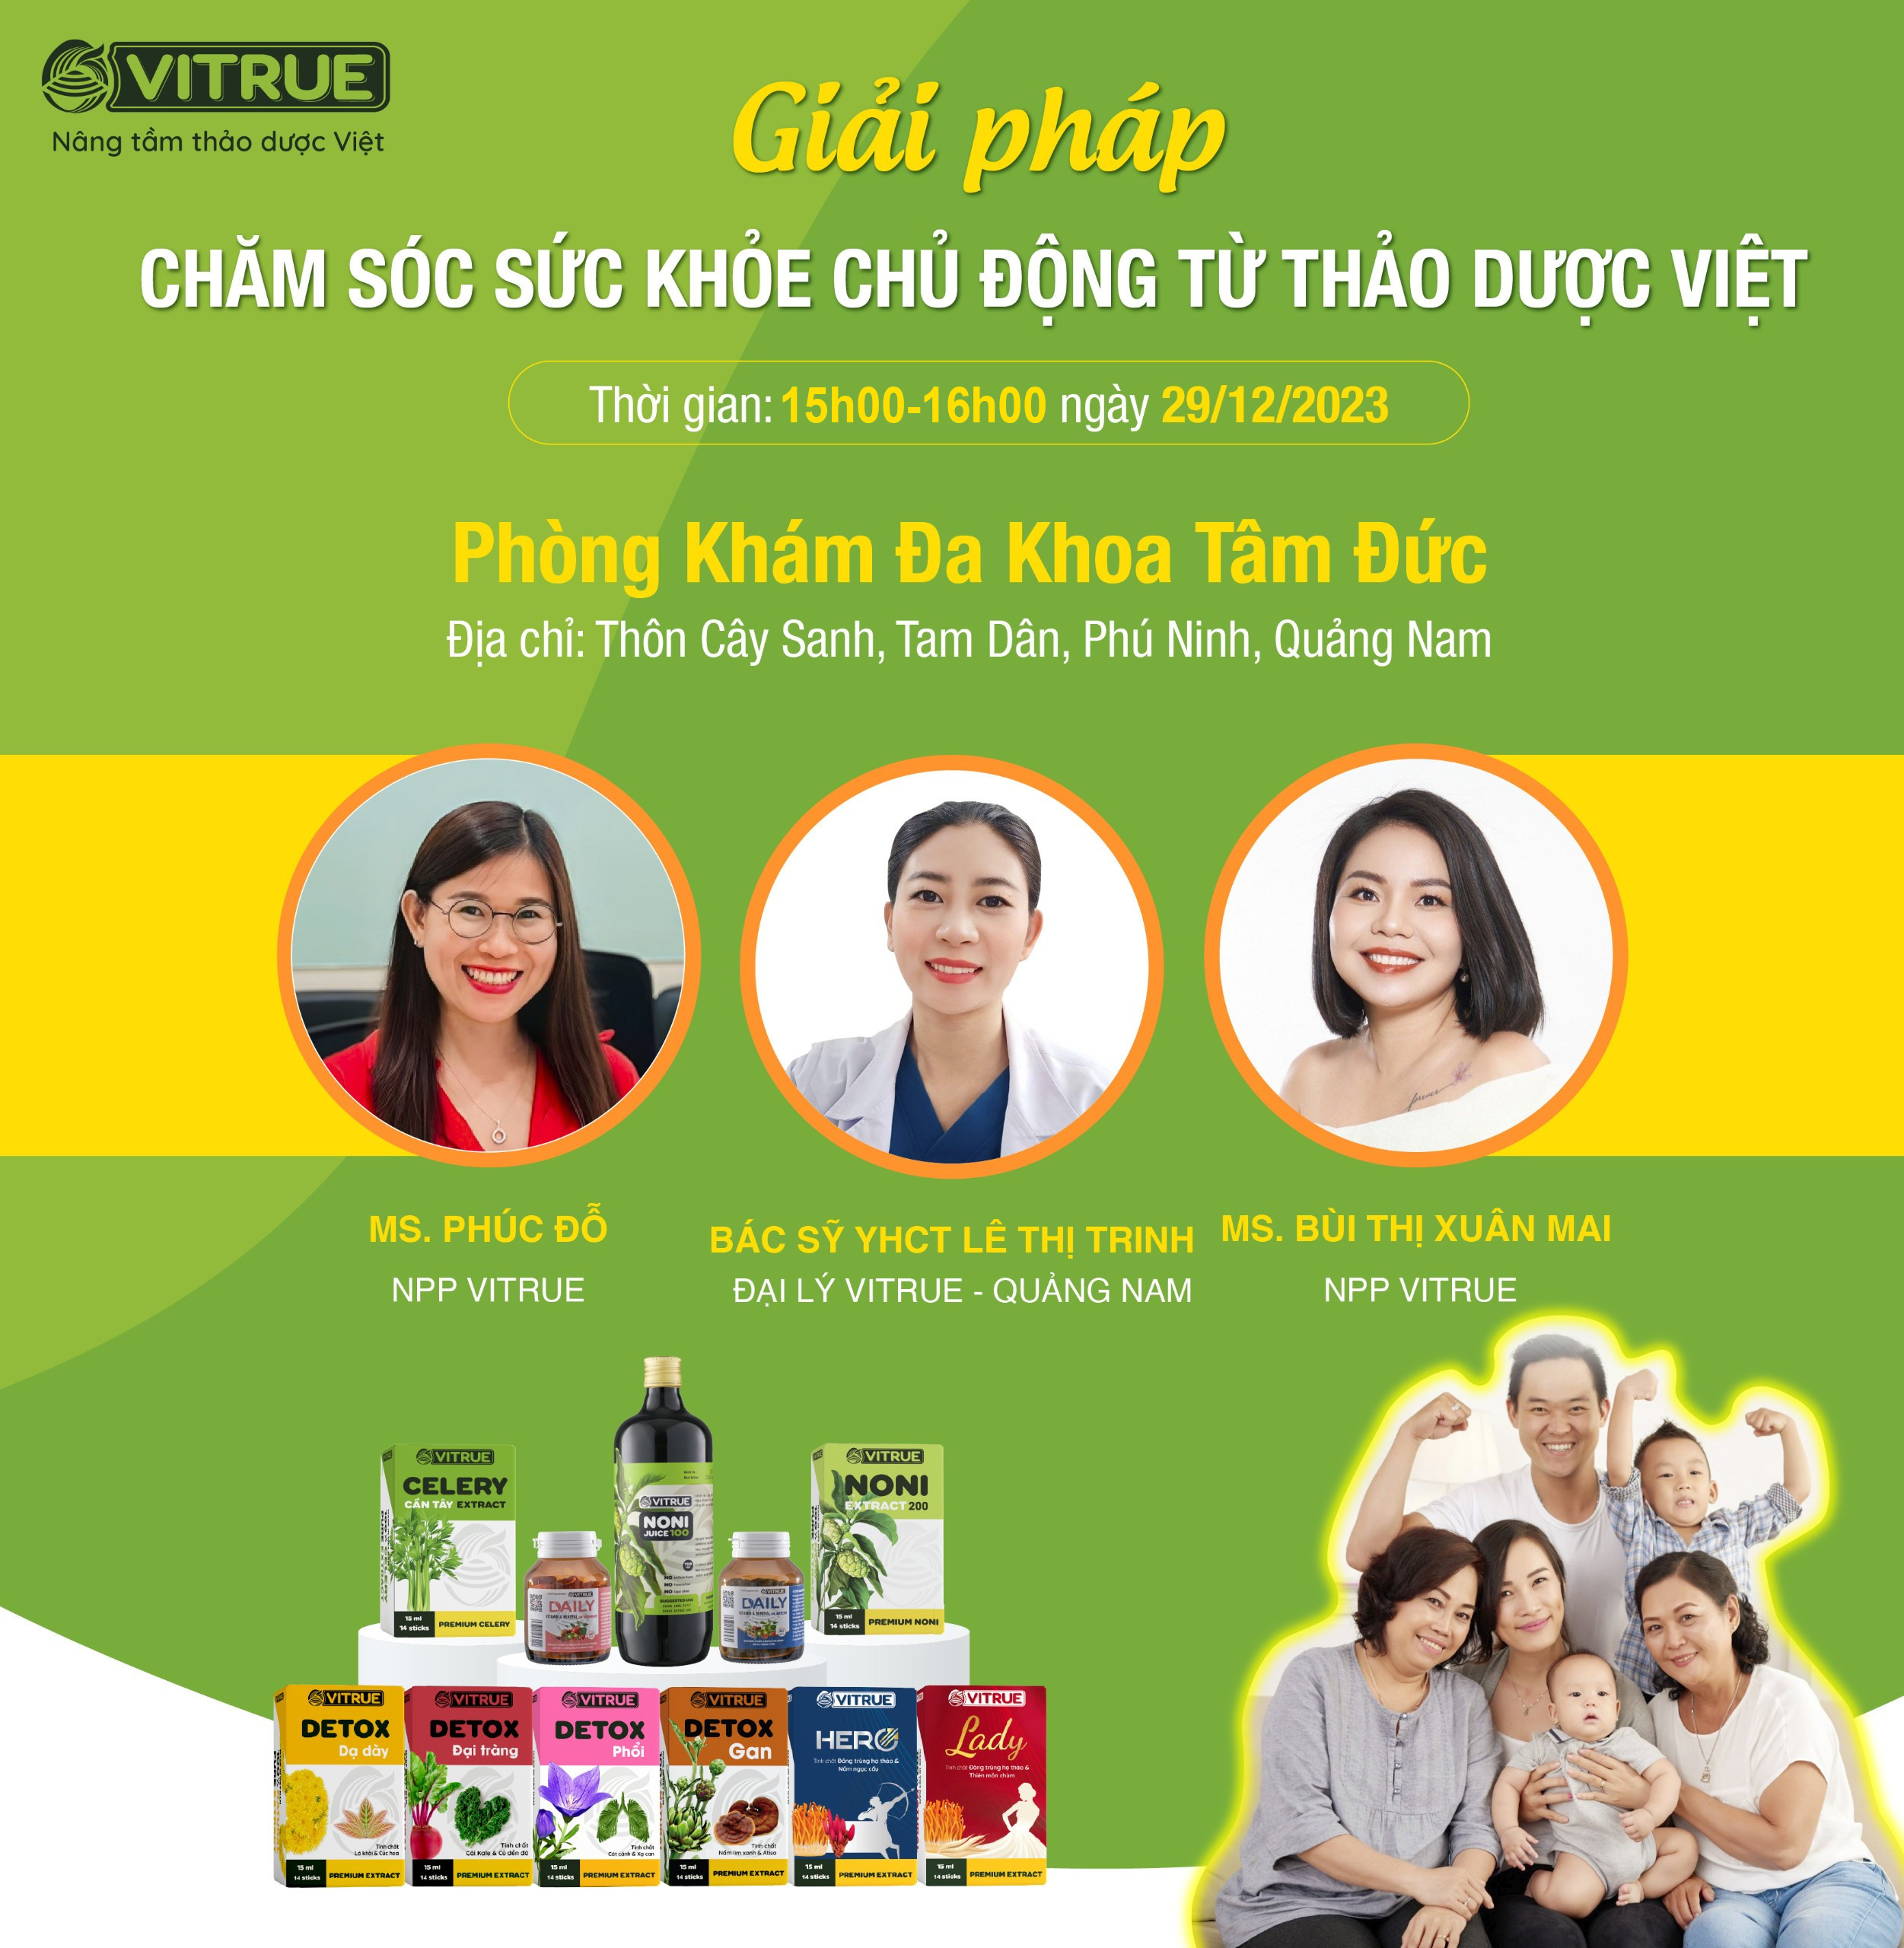 Workshop “Giải pháp chăm sóc sức khỏe từ thảo dược Việt”